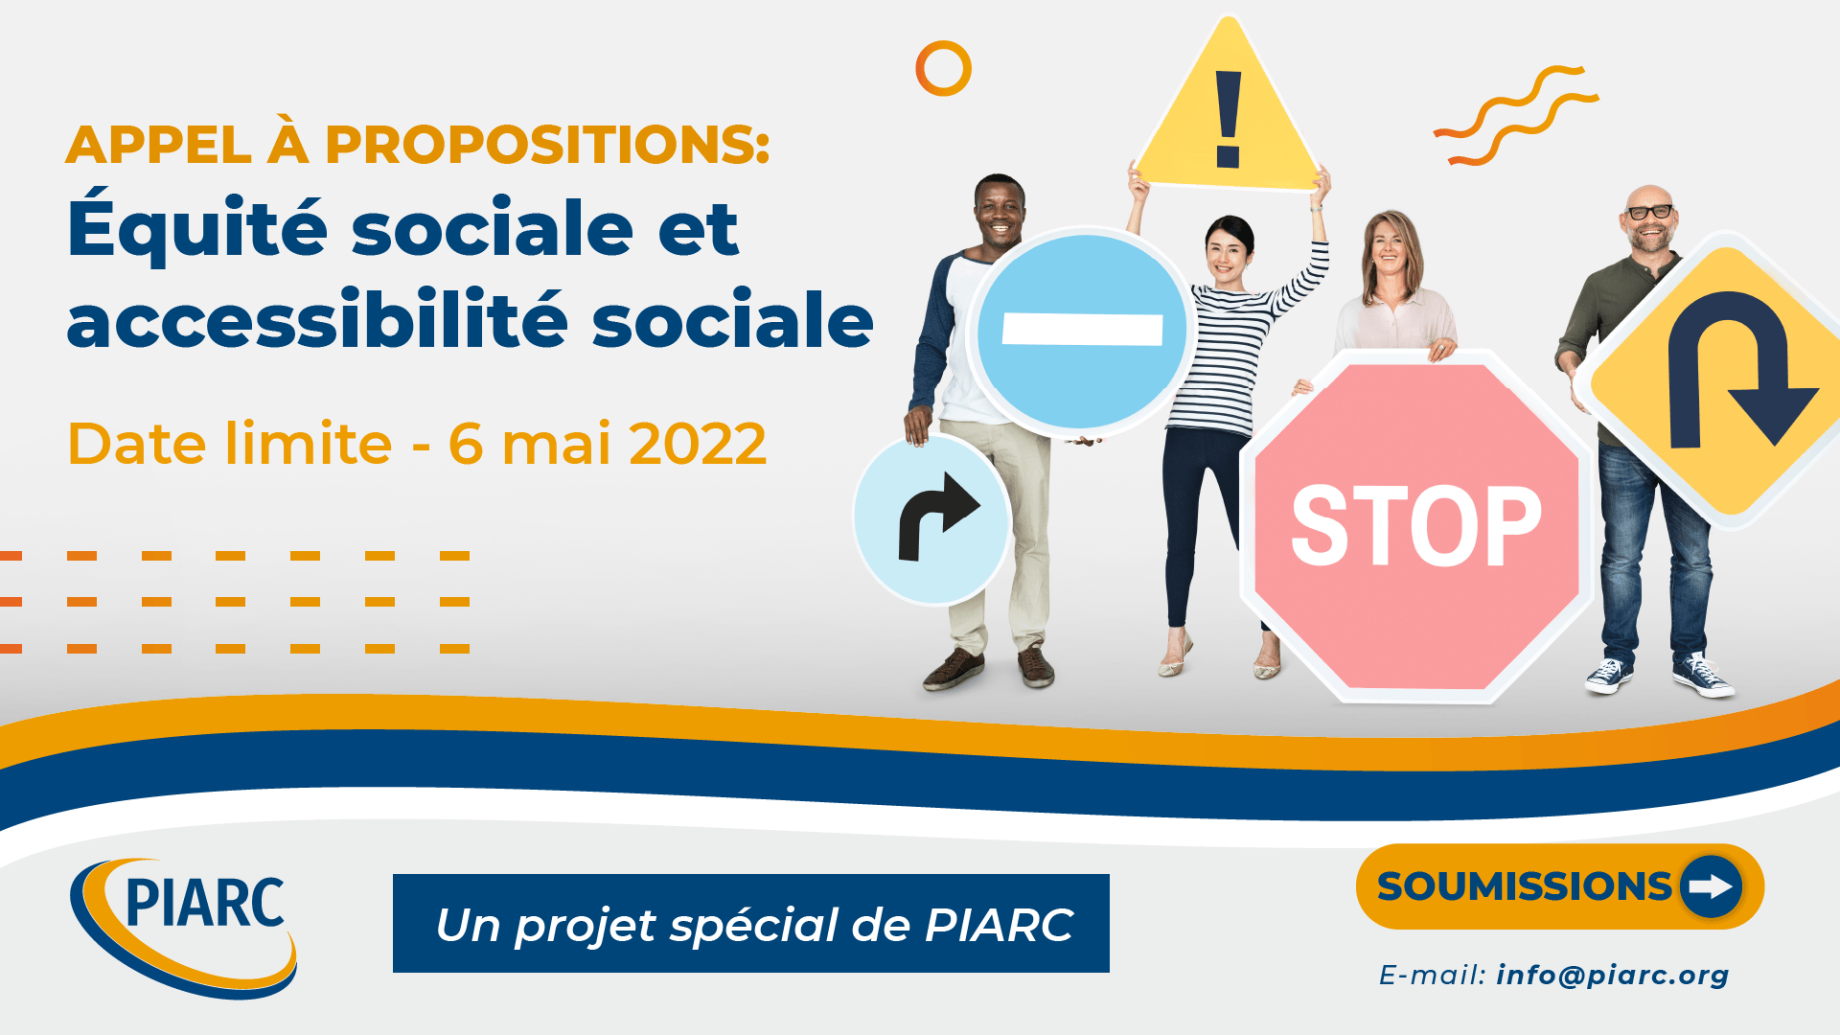 Nouvel appel à propositions pour le projet spécial de PIARC "Équité sociale et accessibilité sociale" !